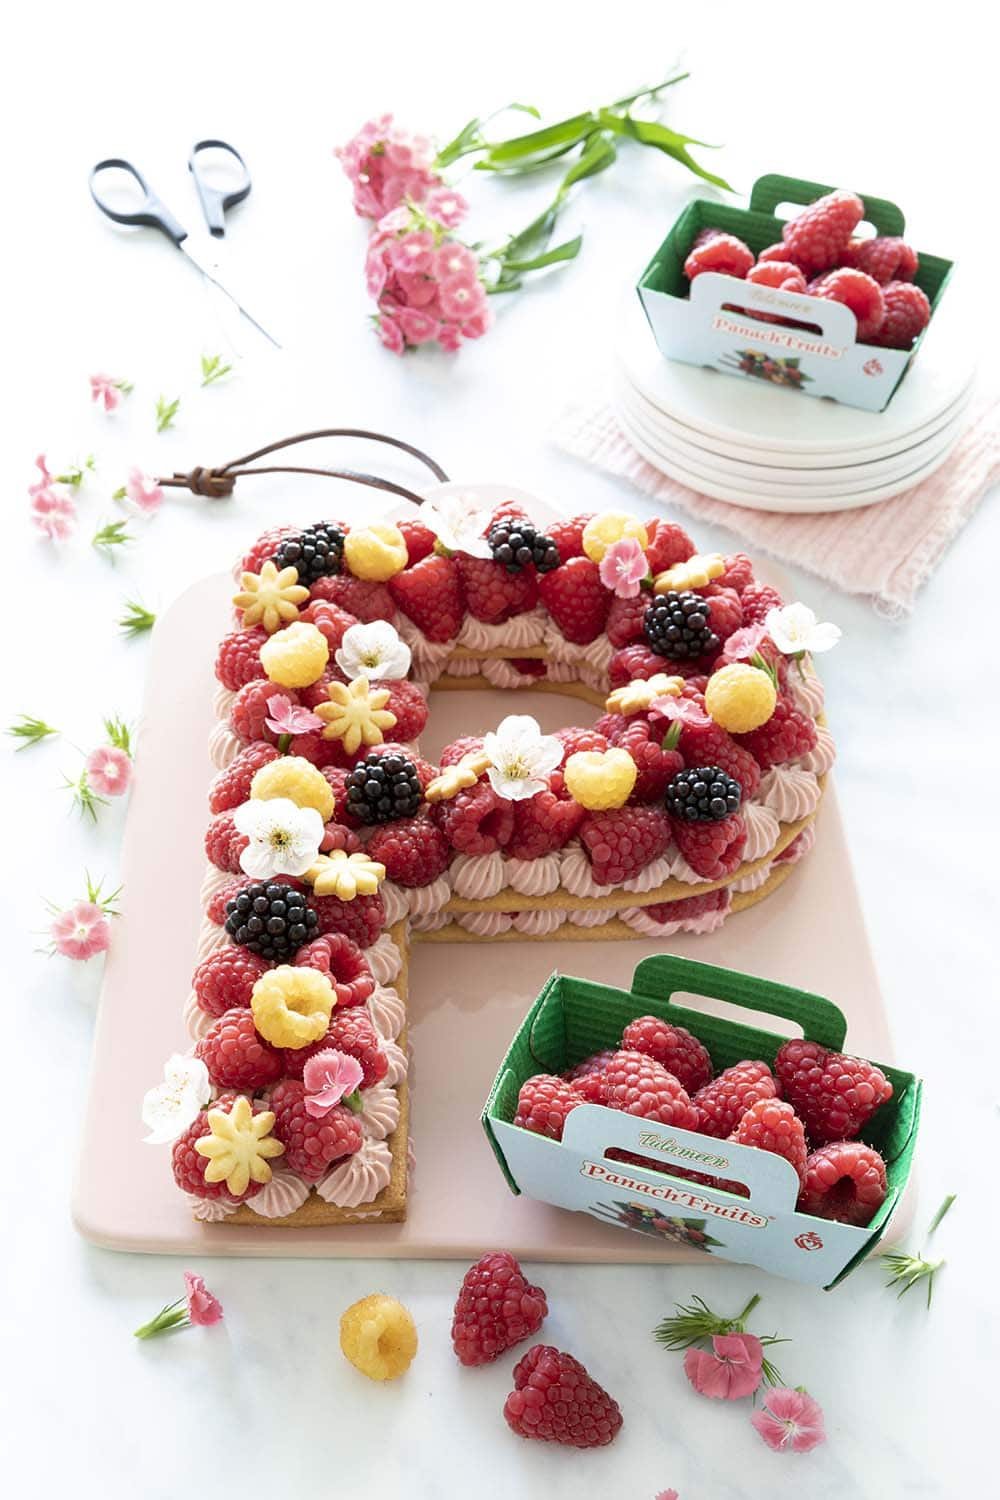 Letter cake aux framboises